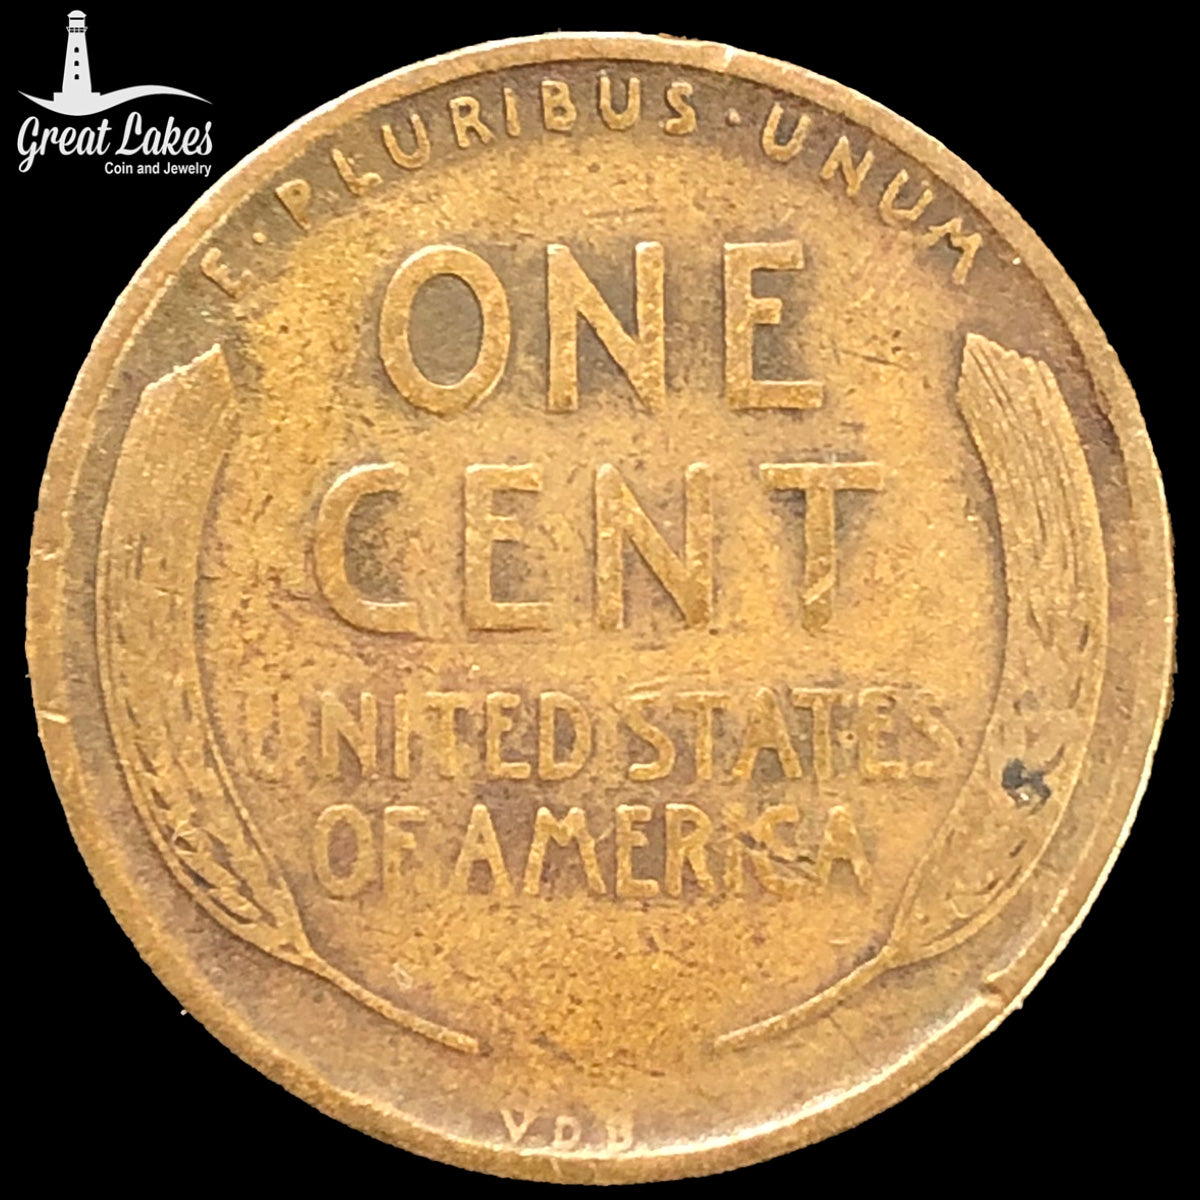 1909 V.D.B. Lincoln Cent (VG)